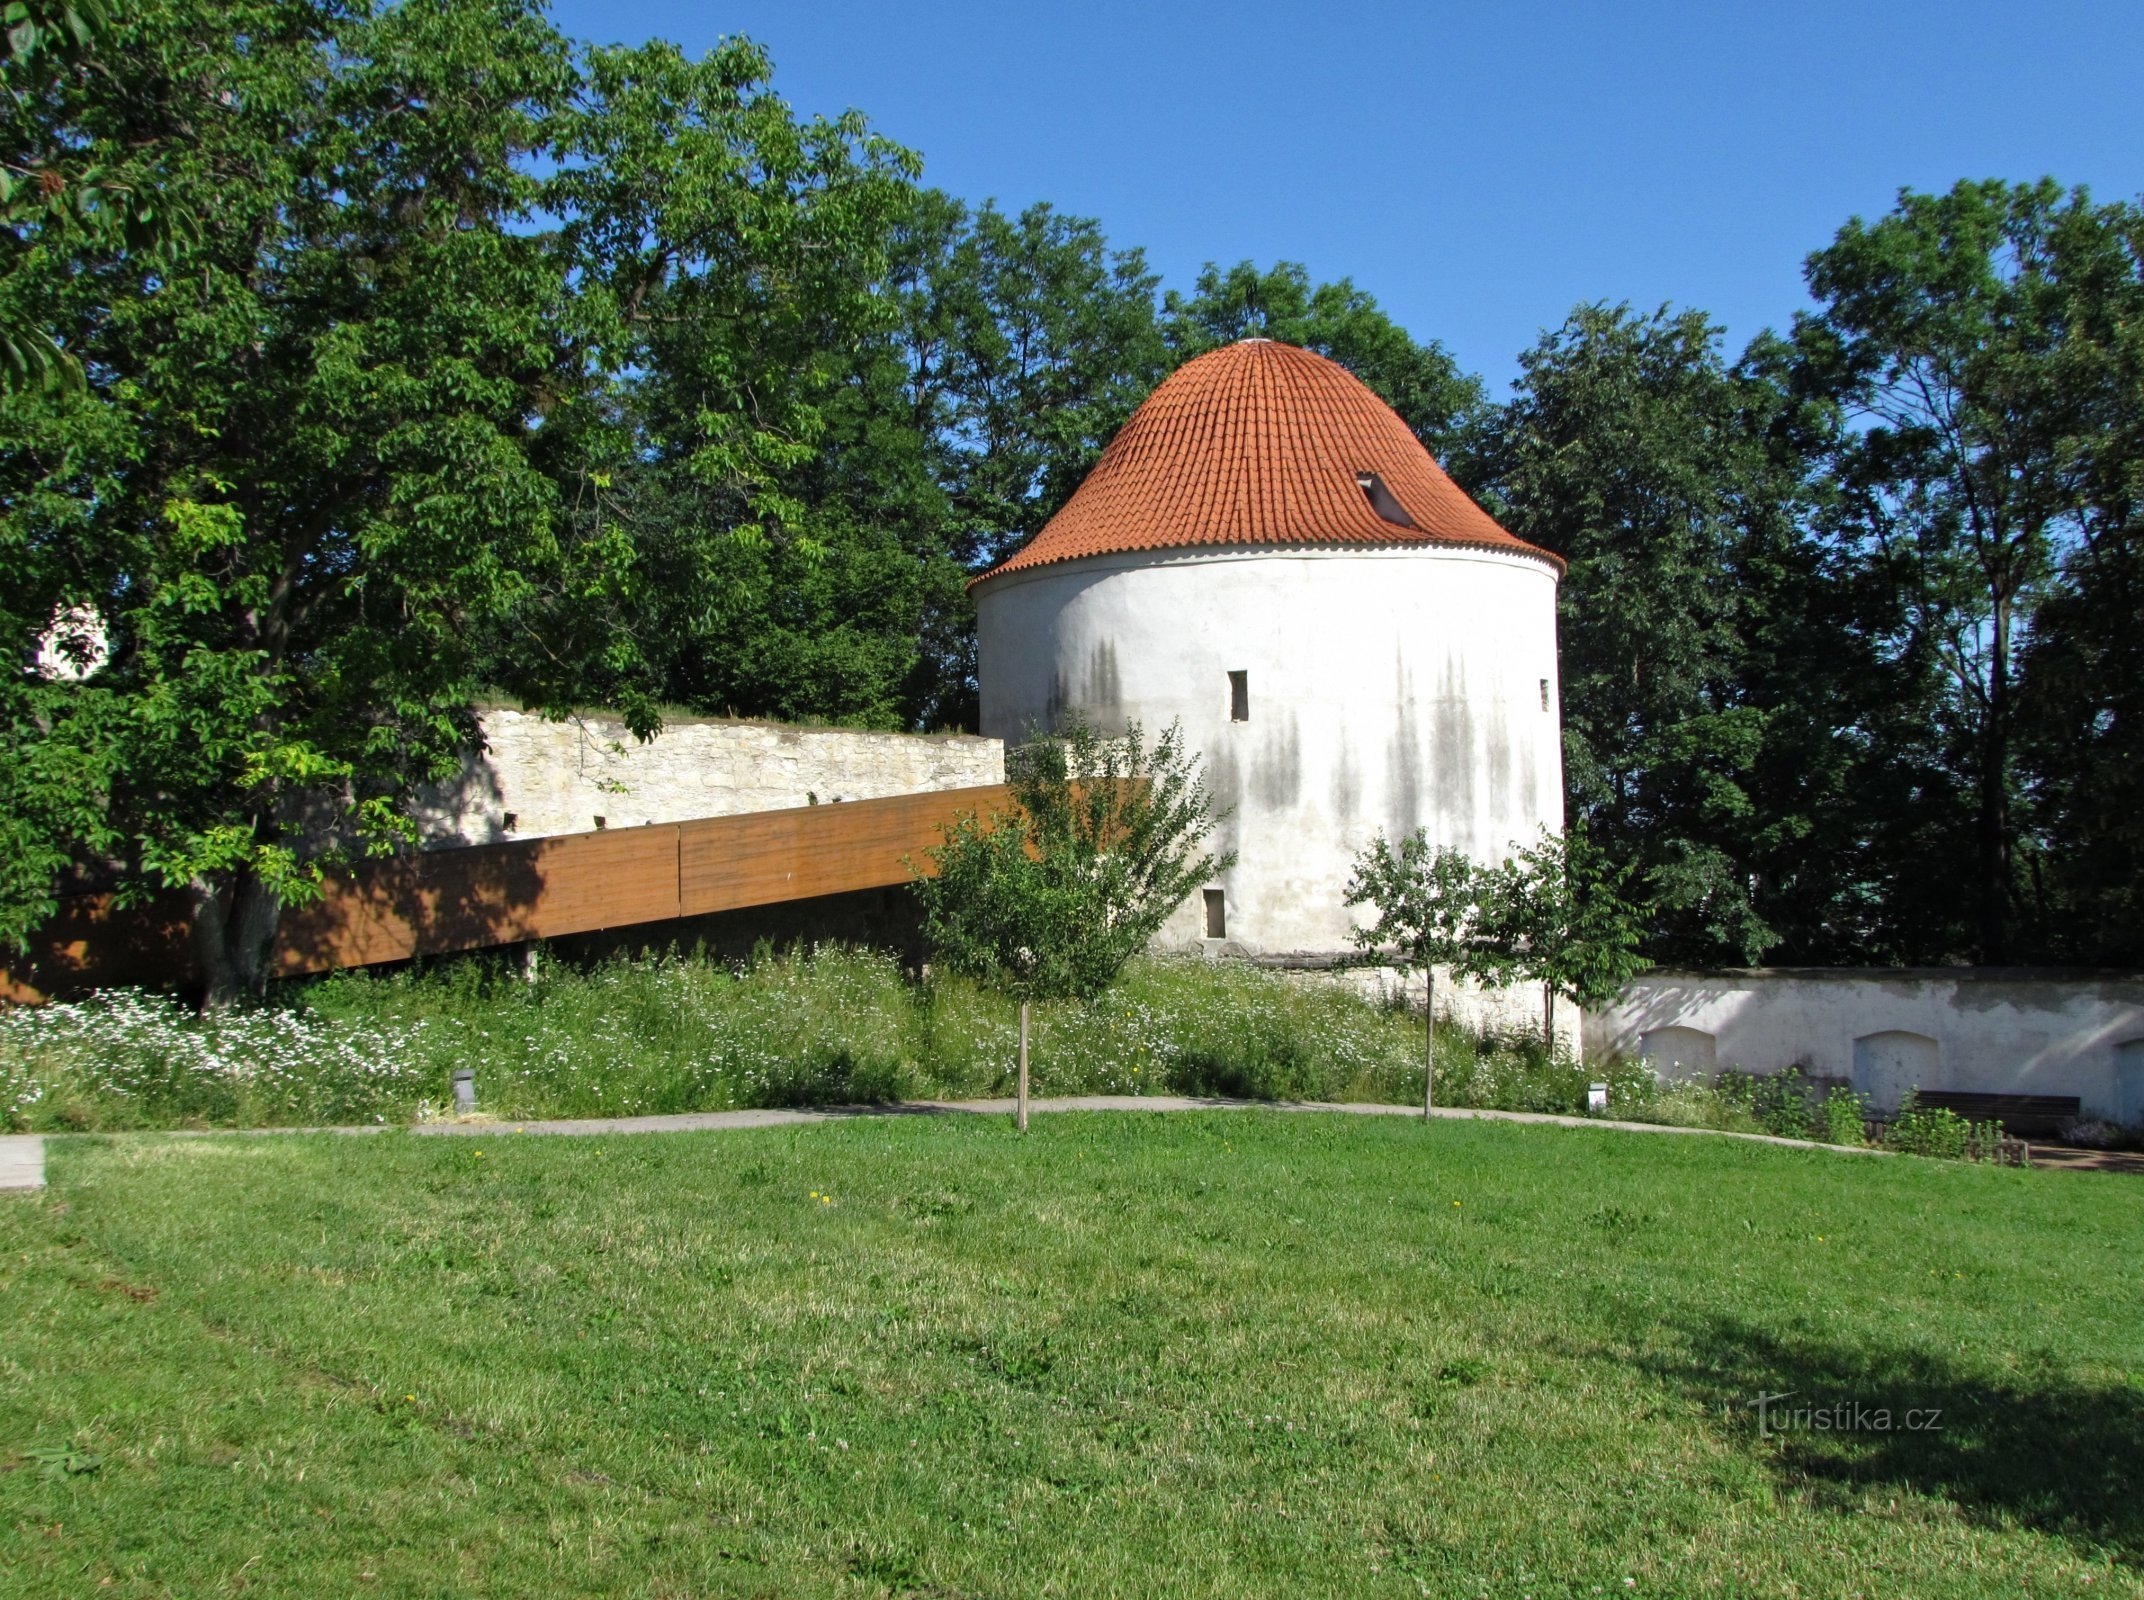 Chrudim - komplex kostela sv.Josefa, kláštera a zahrady